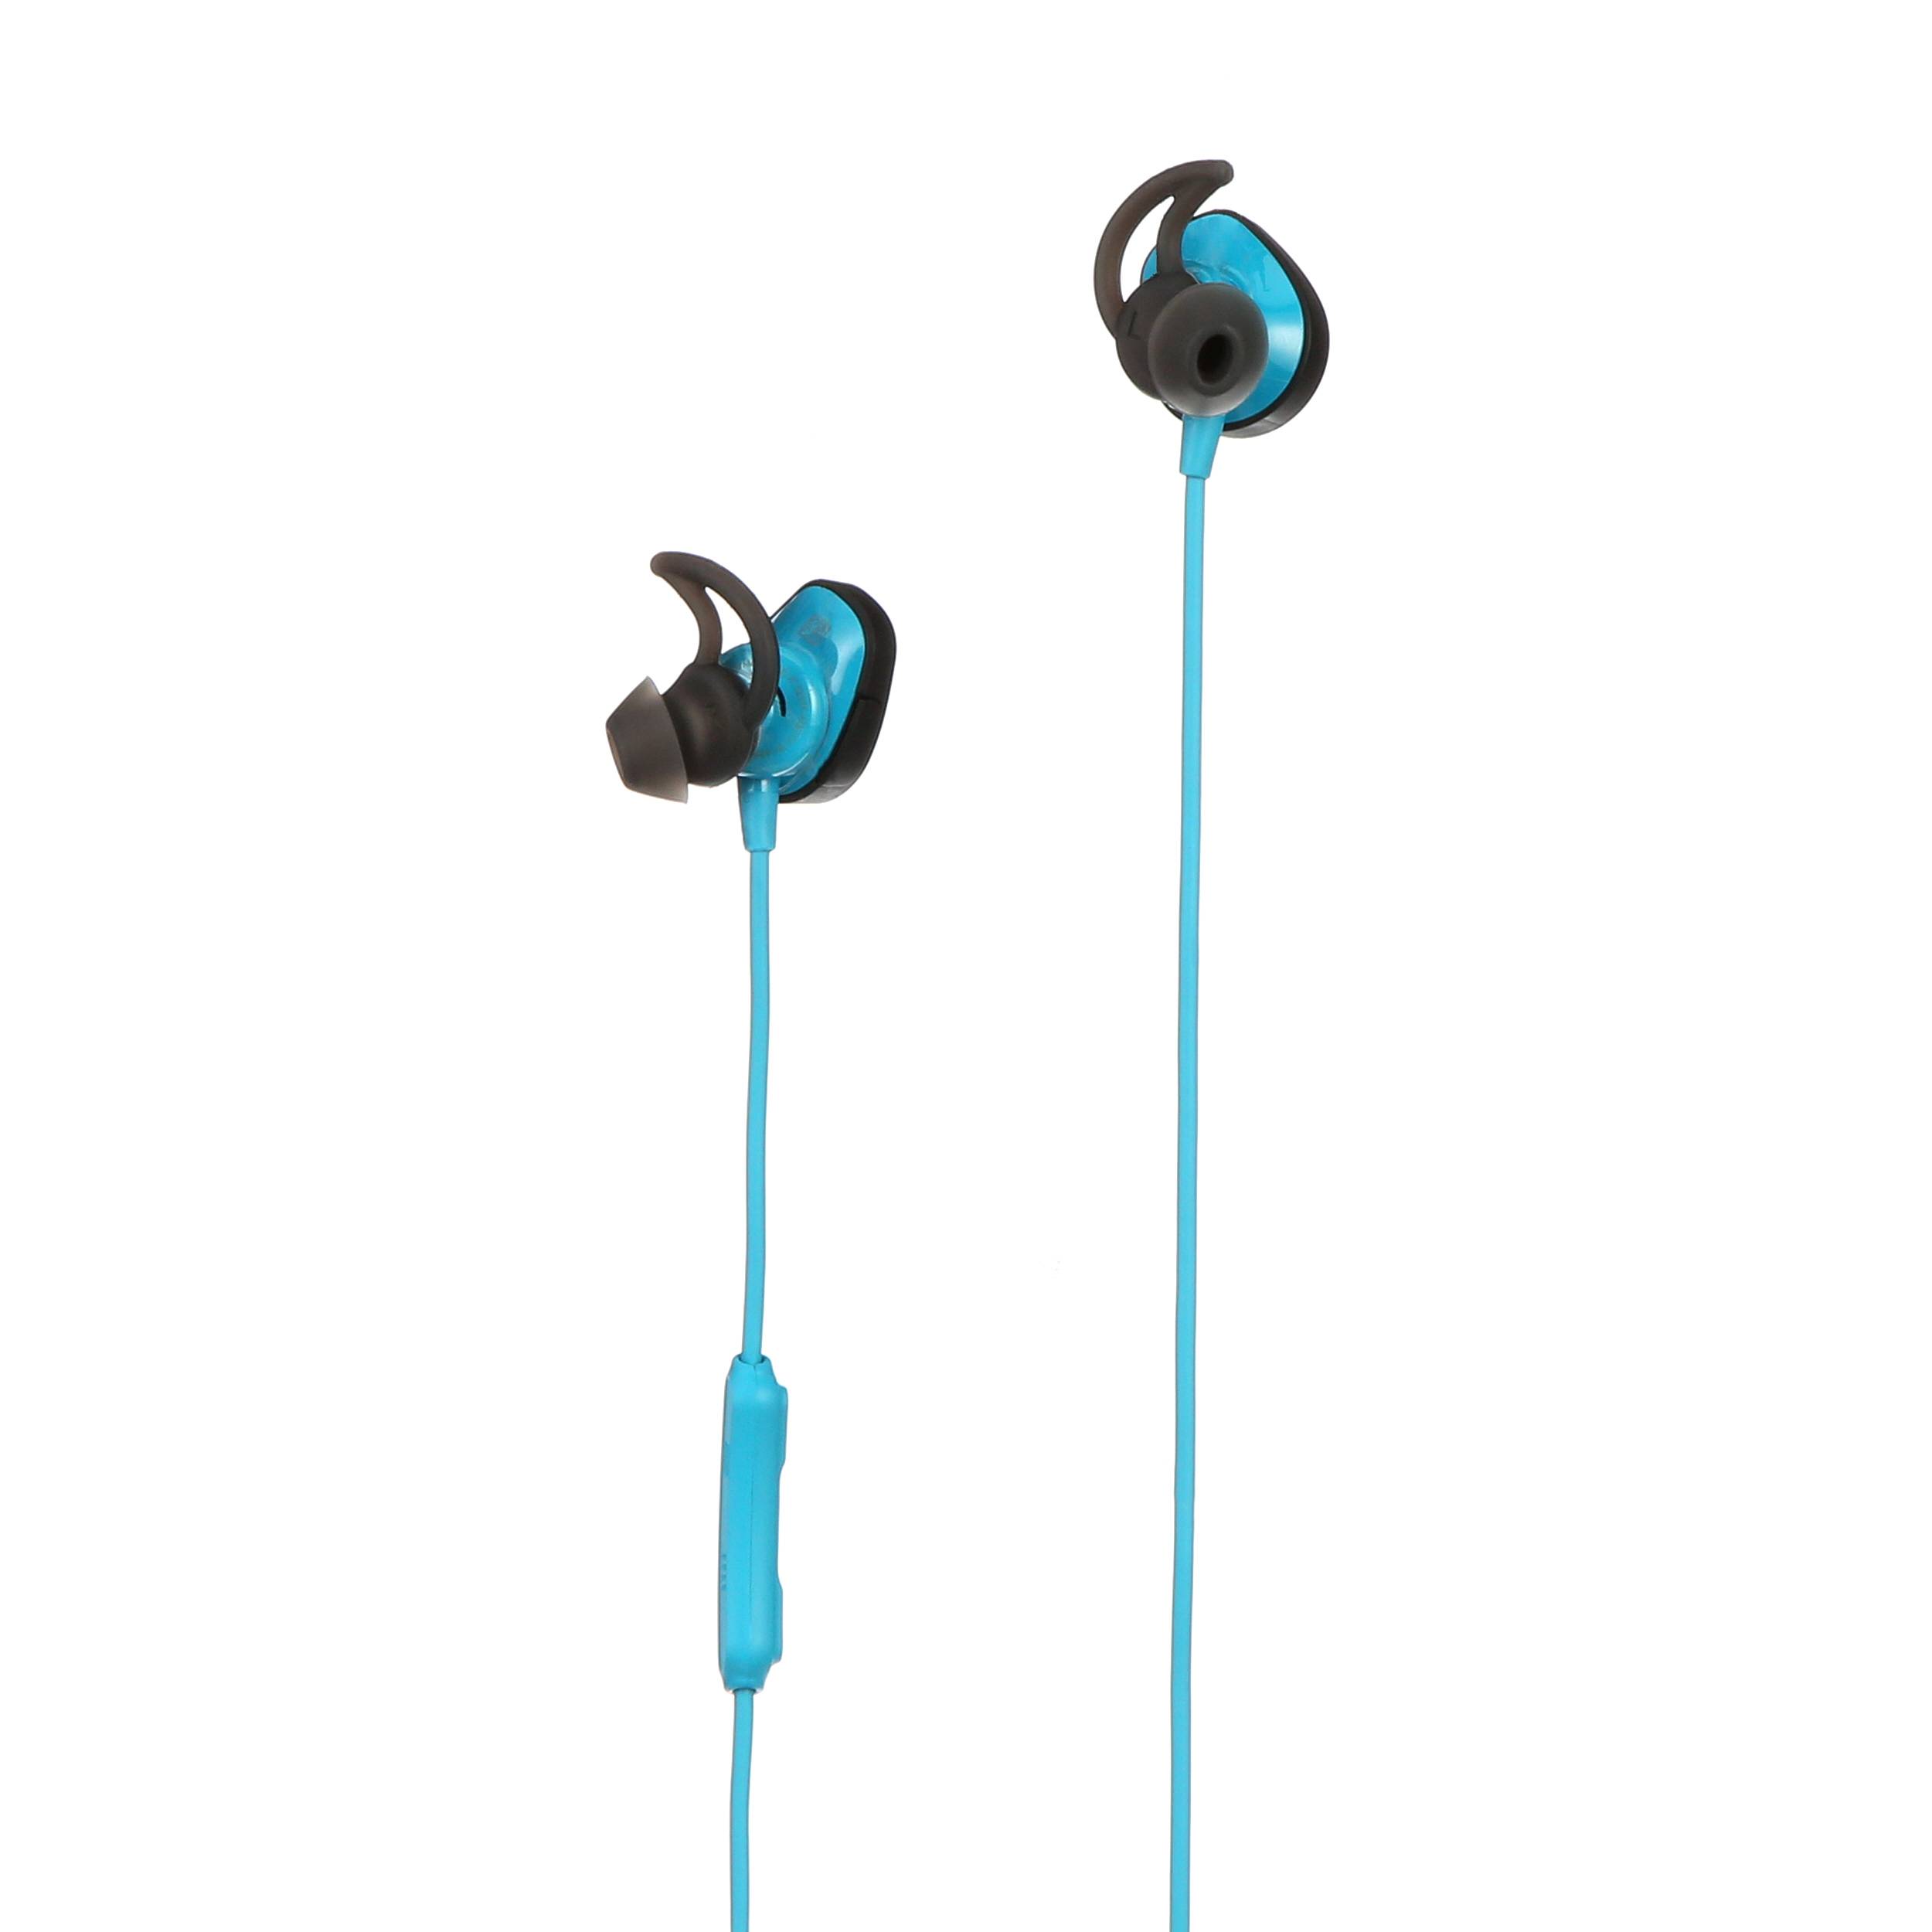 Bose SoundSport Free Wireless In-Ear Headphones 774373-0020 B&H